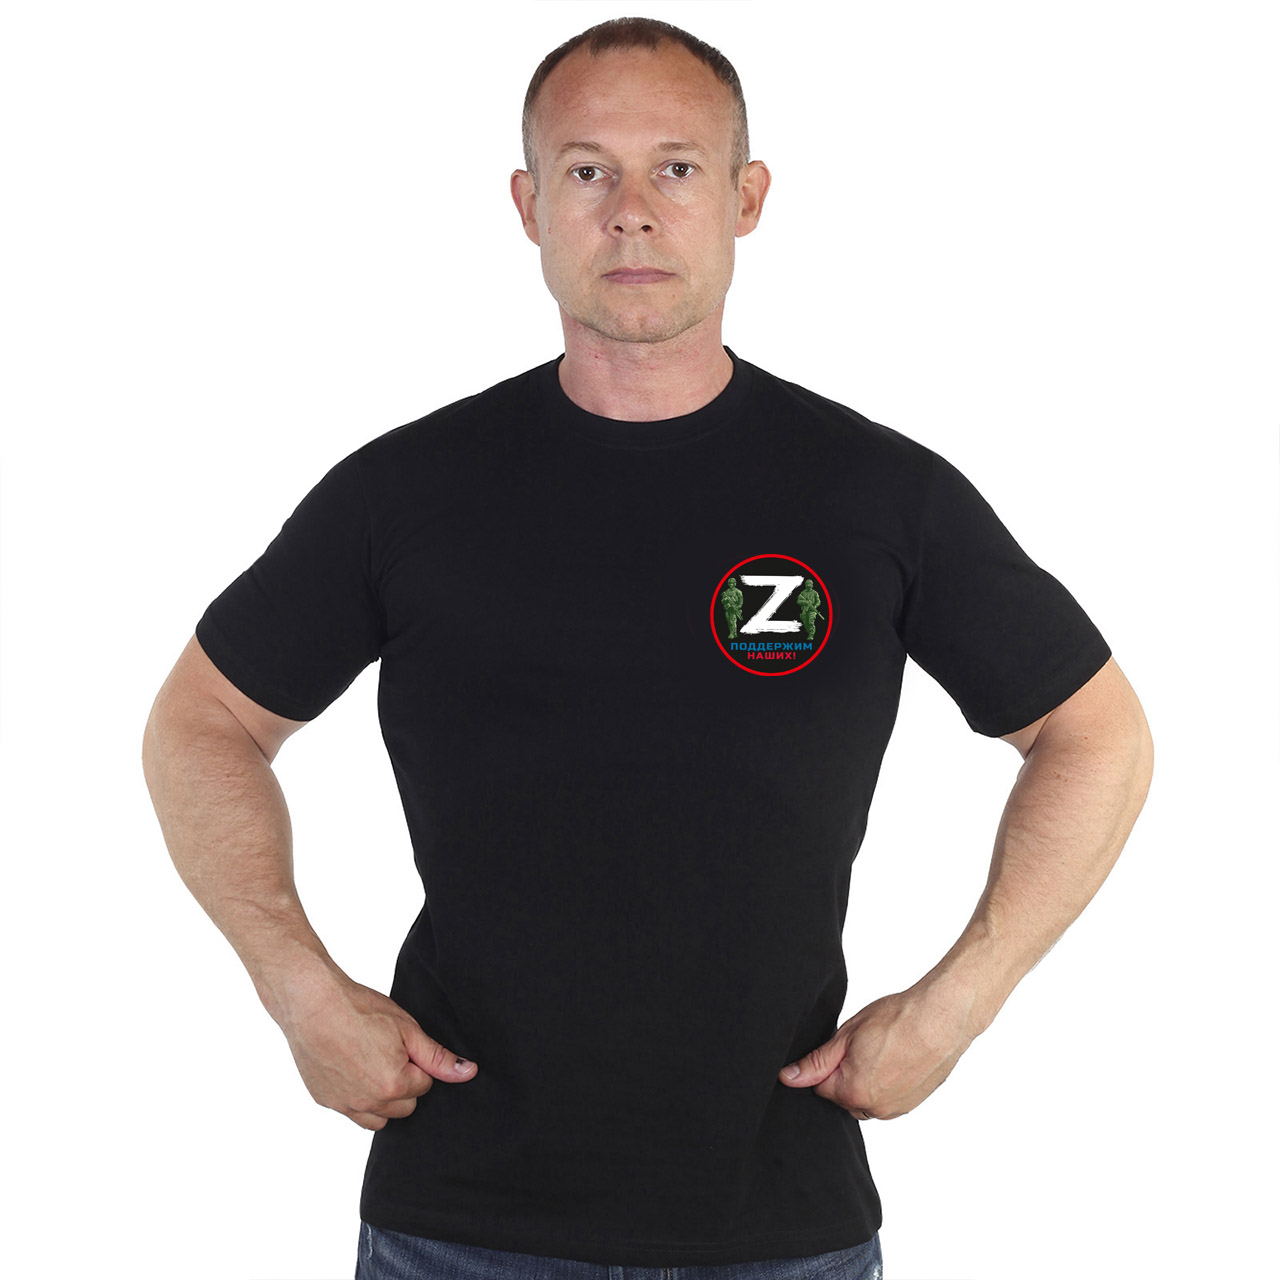 Мужская футболка Спецоперация Z